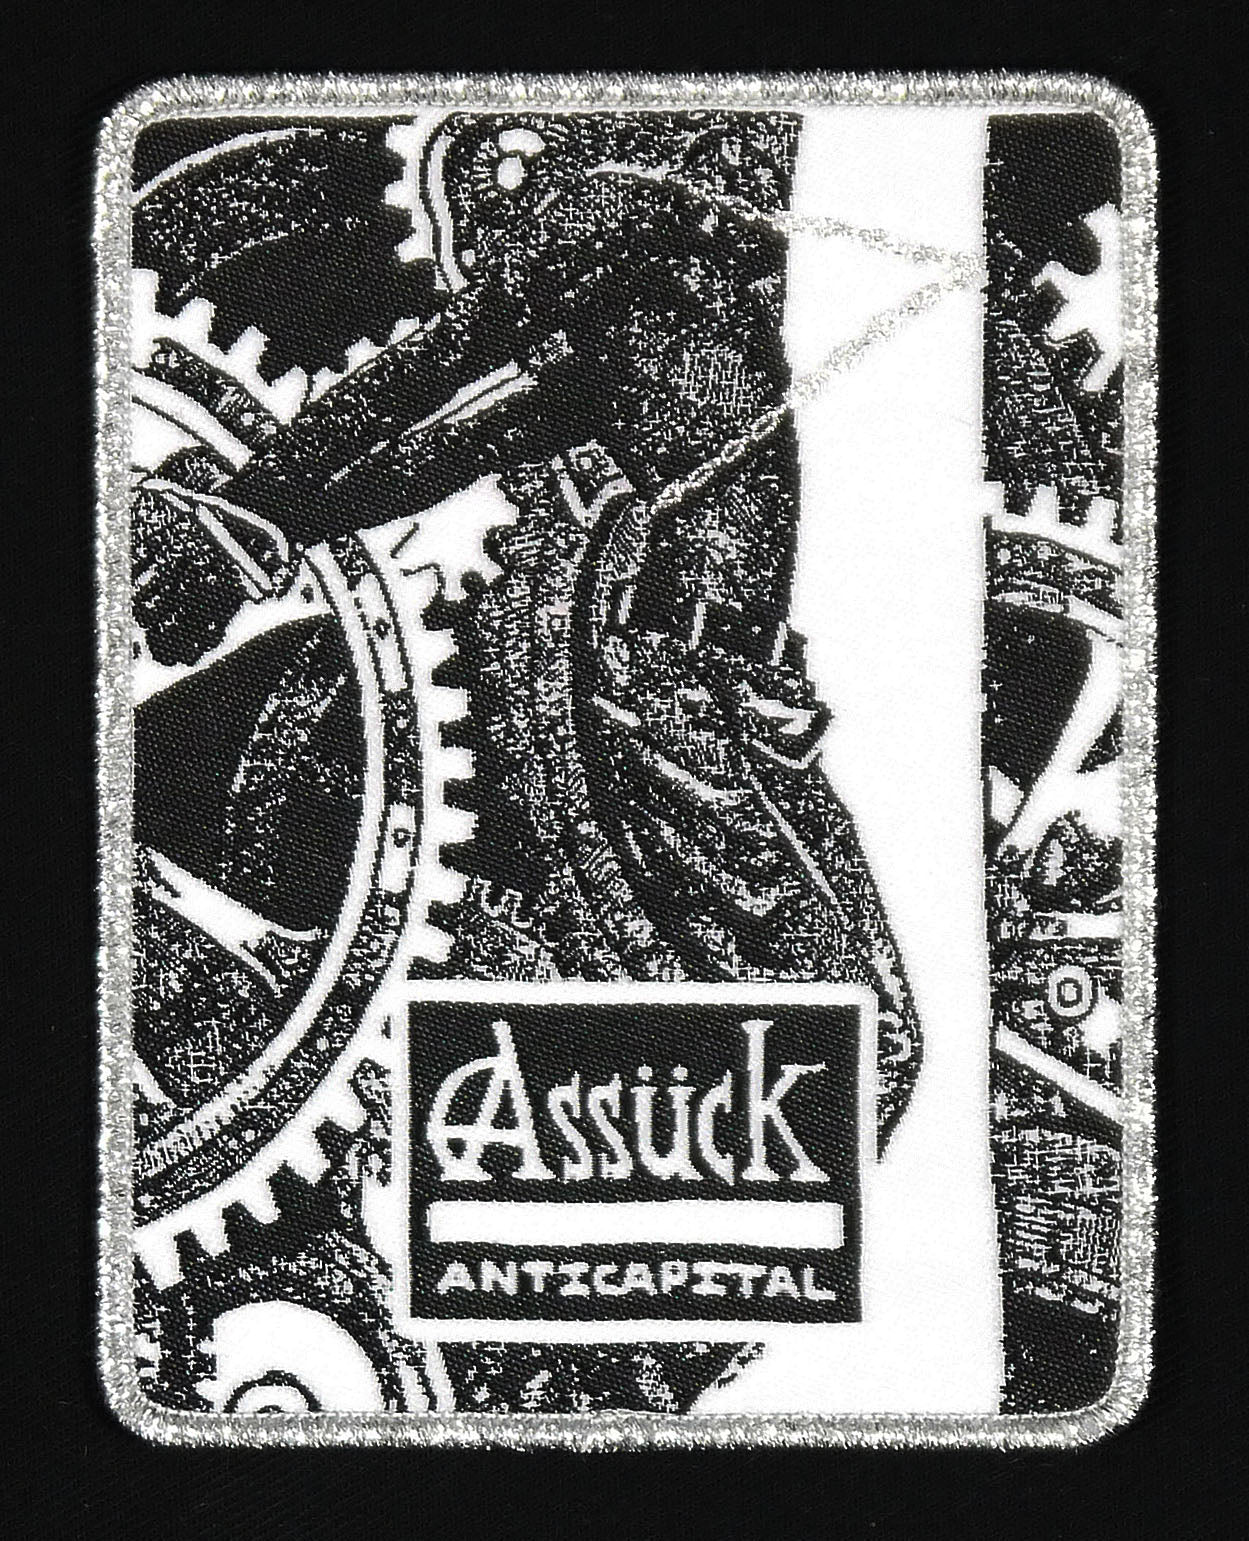 ASSUCK - Anticapital Woven Patch